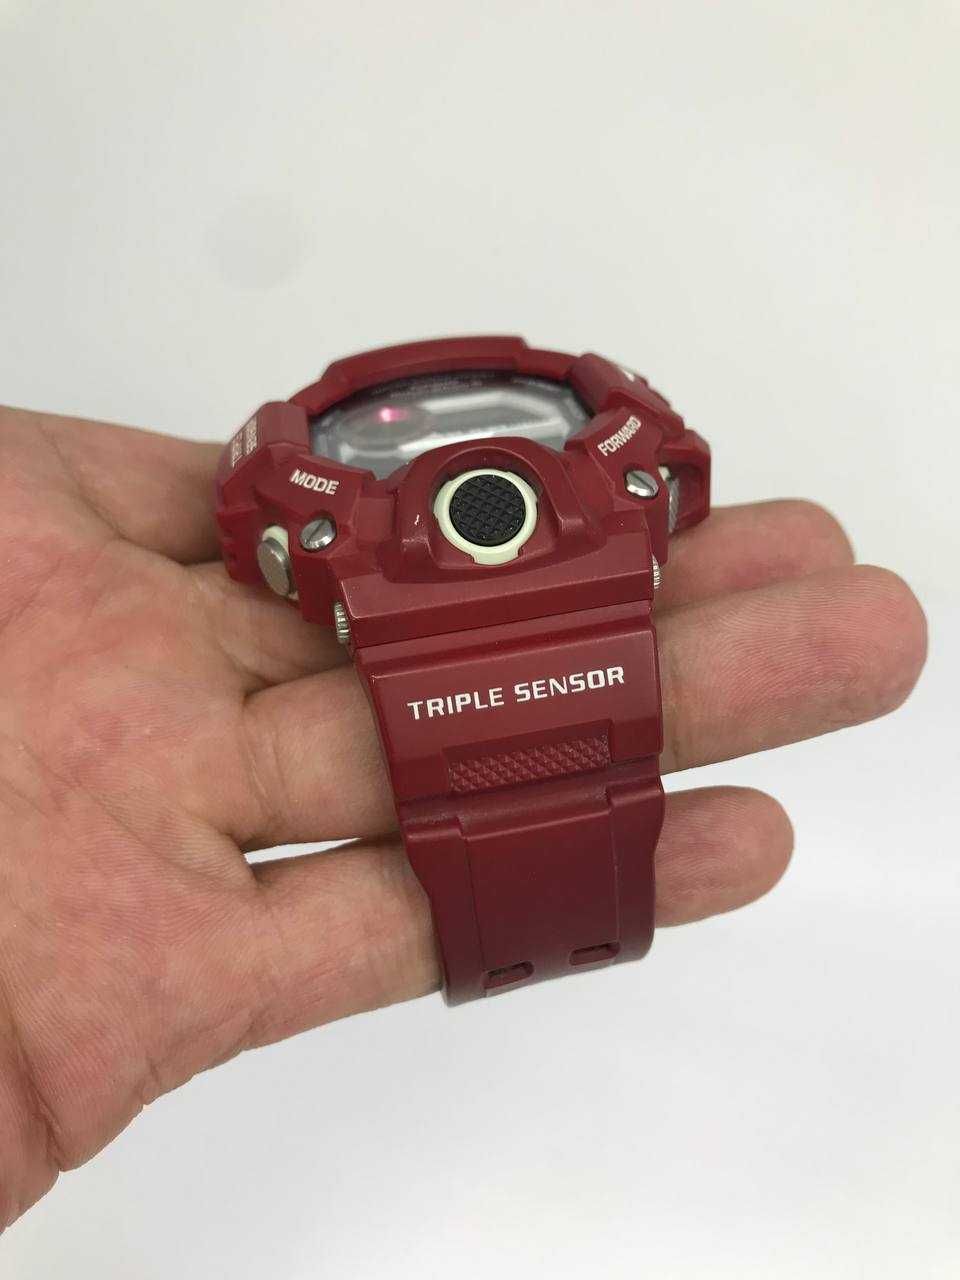 Чоловічий годинник CASIO G-Shock GW-9400-1ER